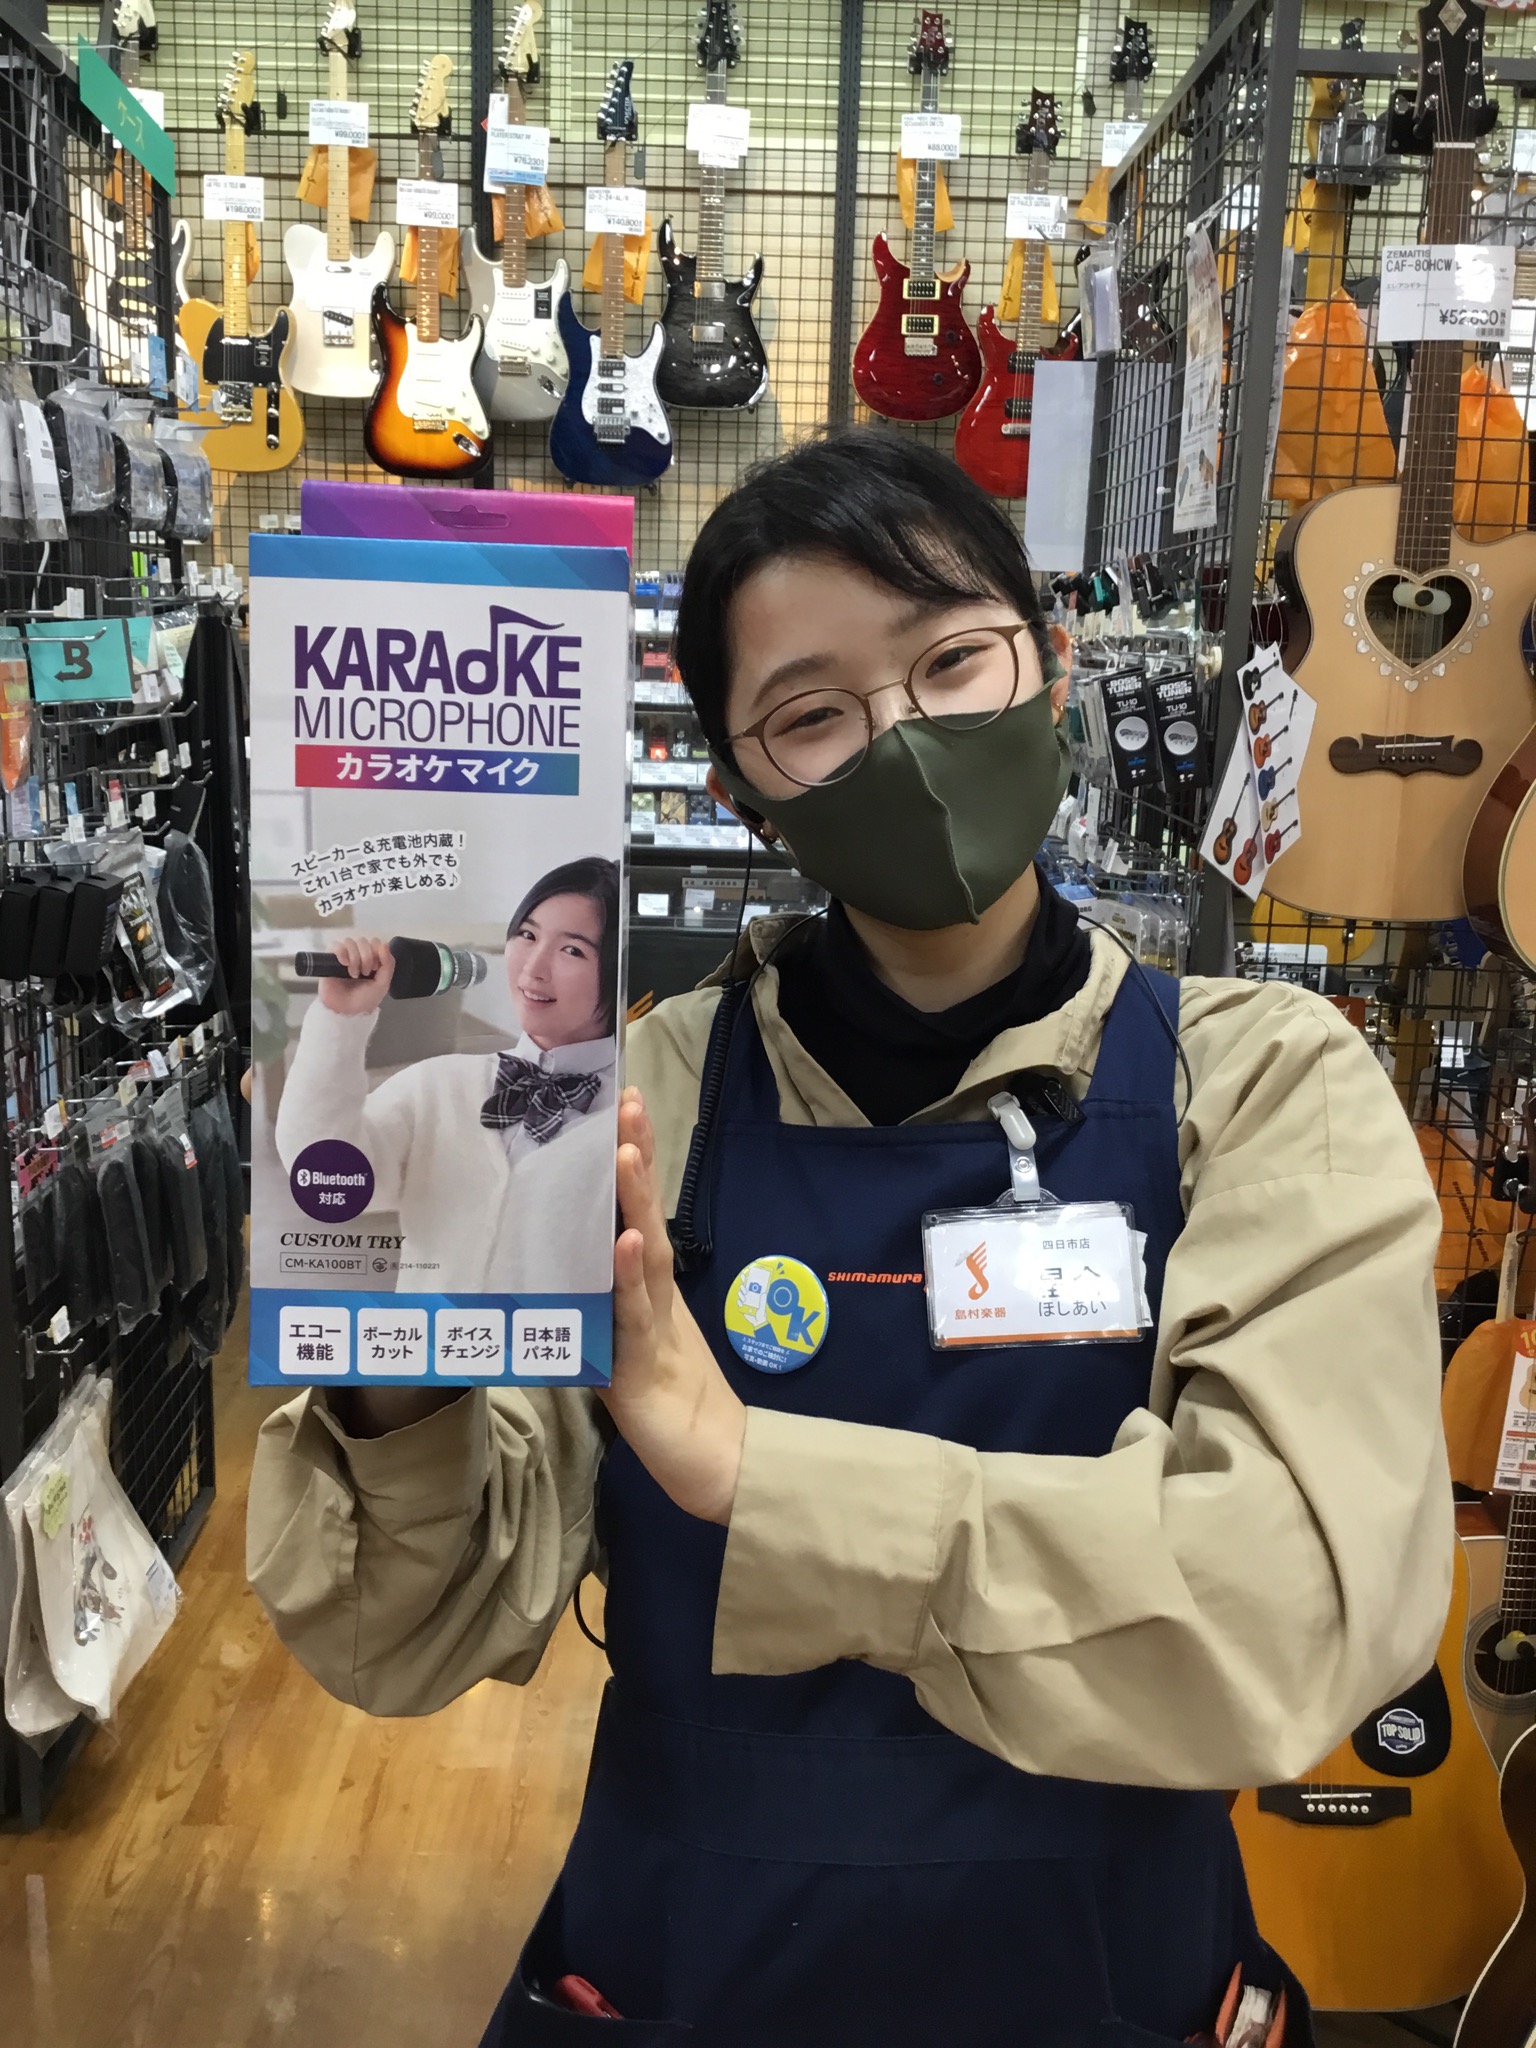 *カラオケマイク(スピーカ付き)の『CM-KA100BT』が入荷しました！！！ 手軽にお家で楽しめるカラオケマイク『CM-KA100BT』が四日市店に入荷しました！]]スピーカー&充電池内蔵マイクとなっており、Bluetoothで好きな曲を再生、エコー機能等を使ってカラオケが楽しめます！ -日本語表 […]